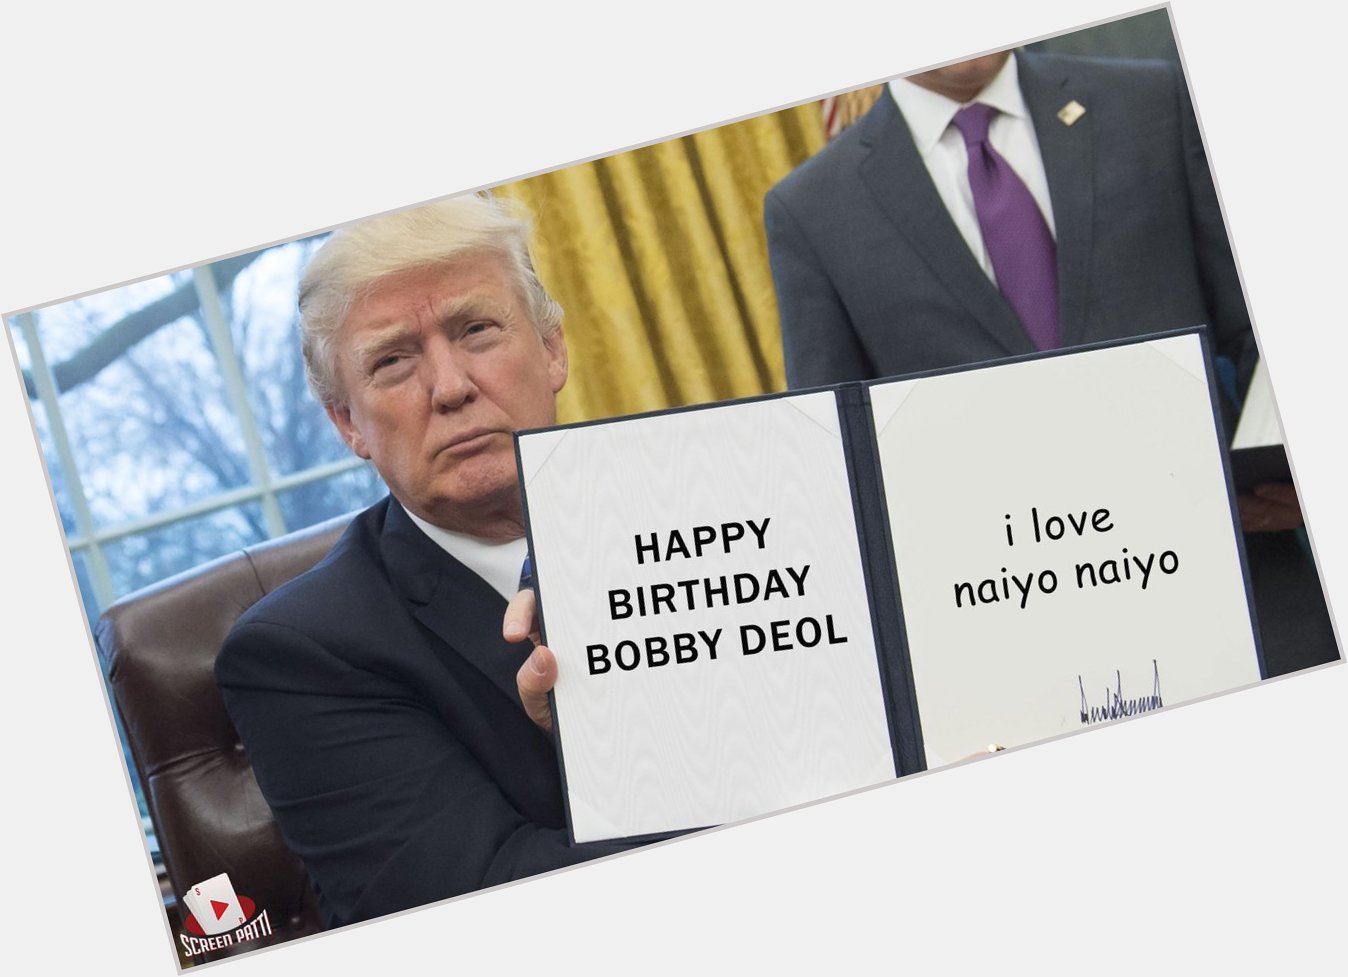 Happy birthday Bobby Deol! 